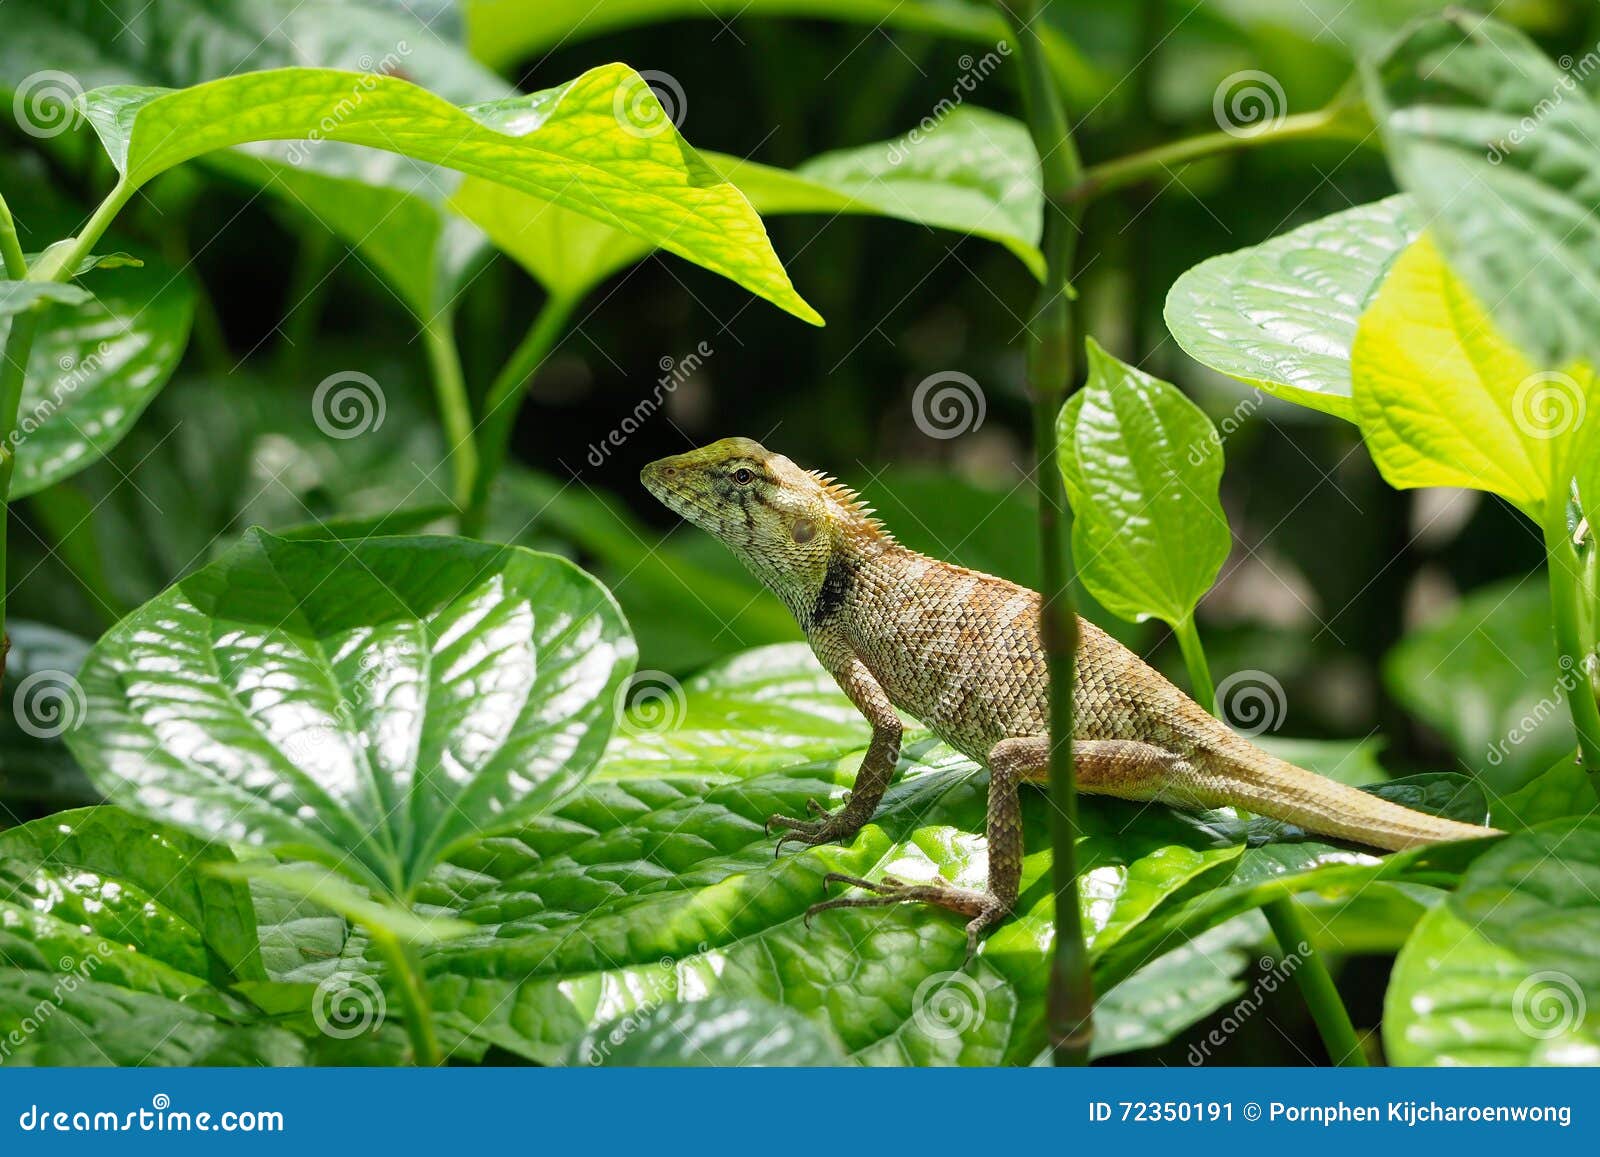 chameleon on green leaf.